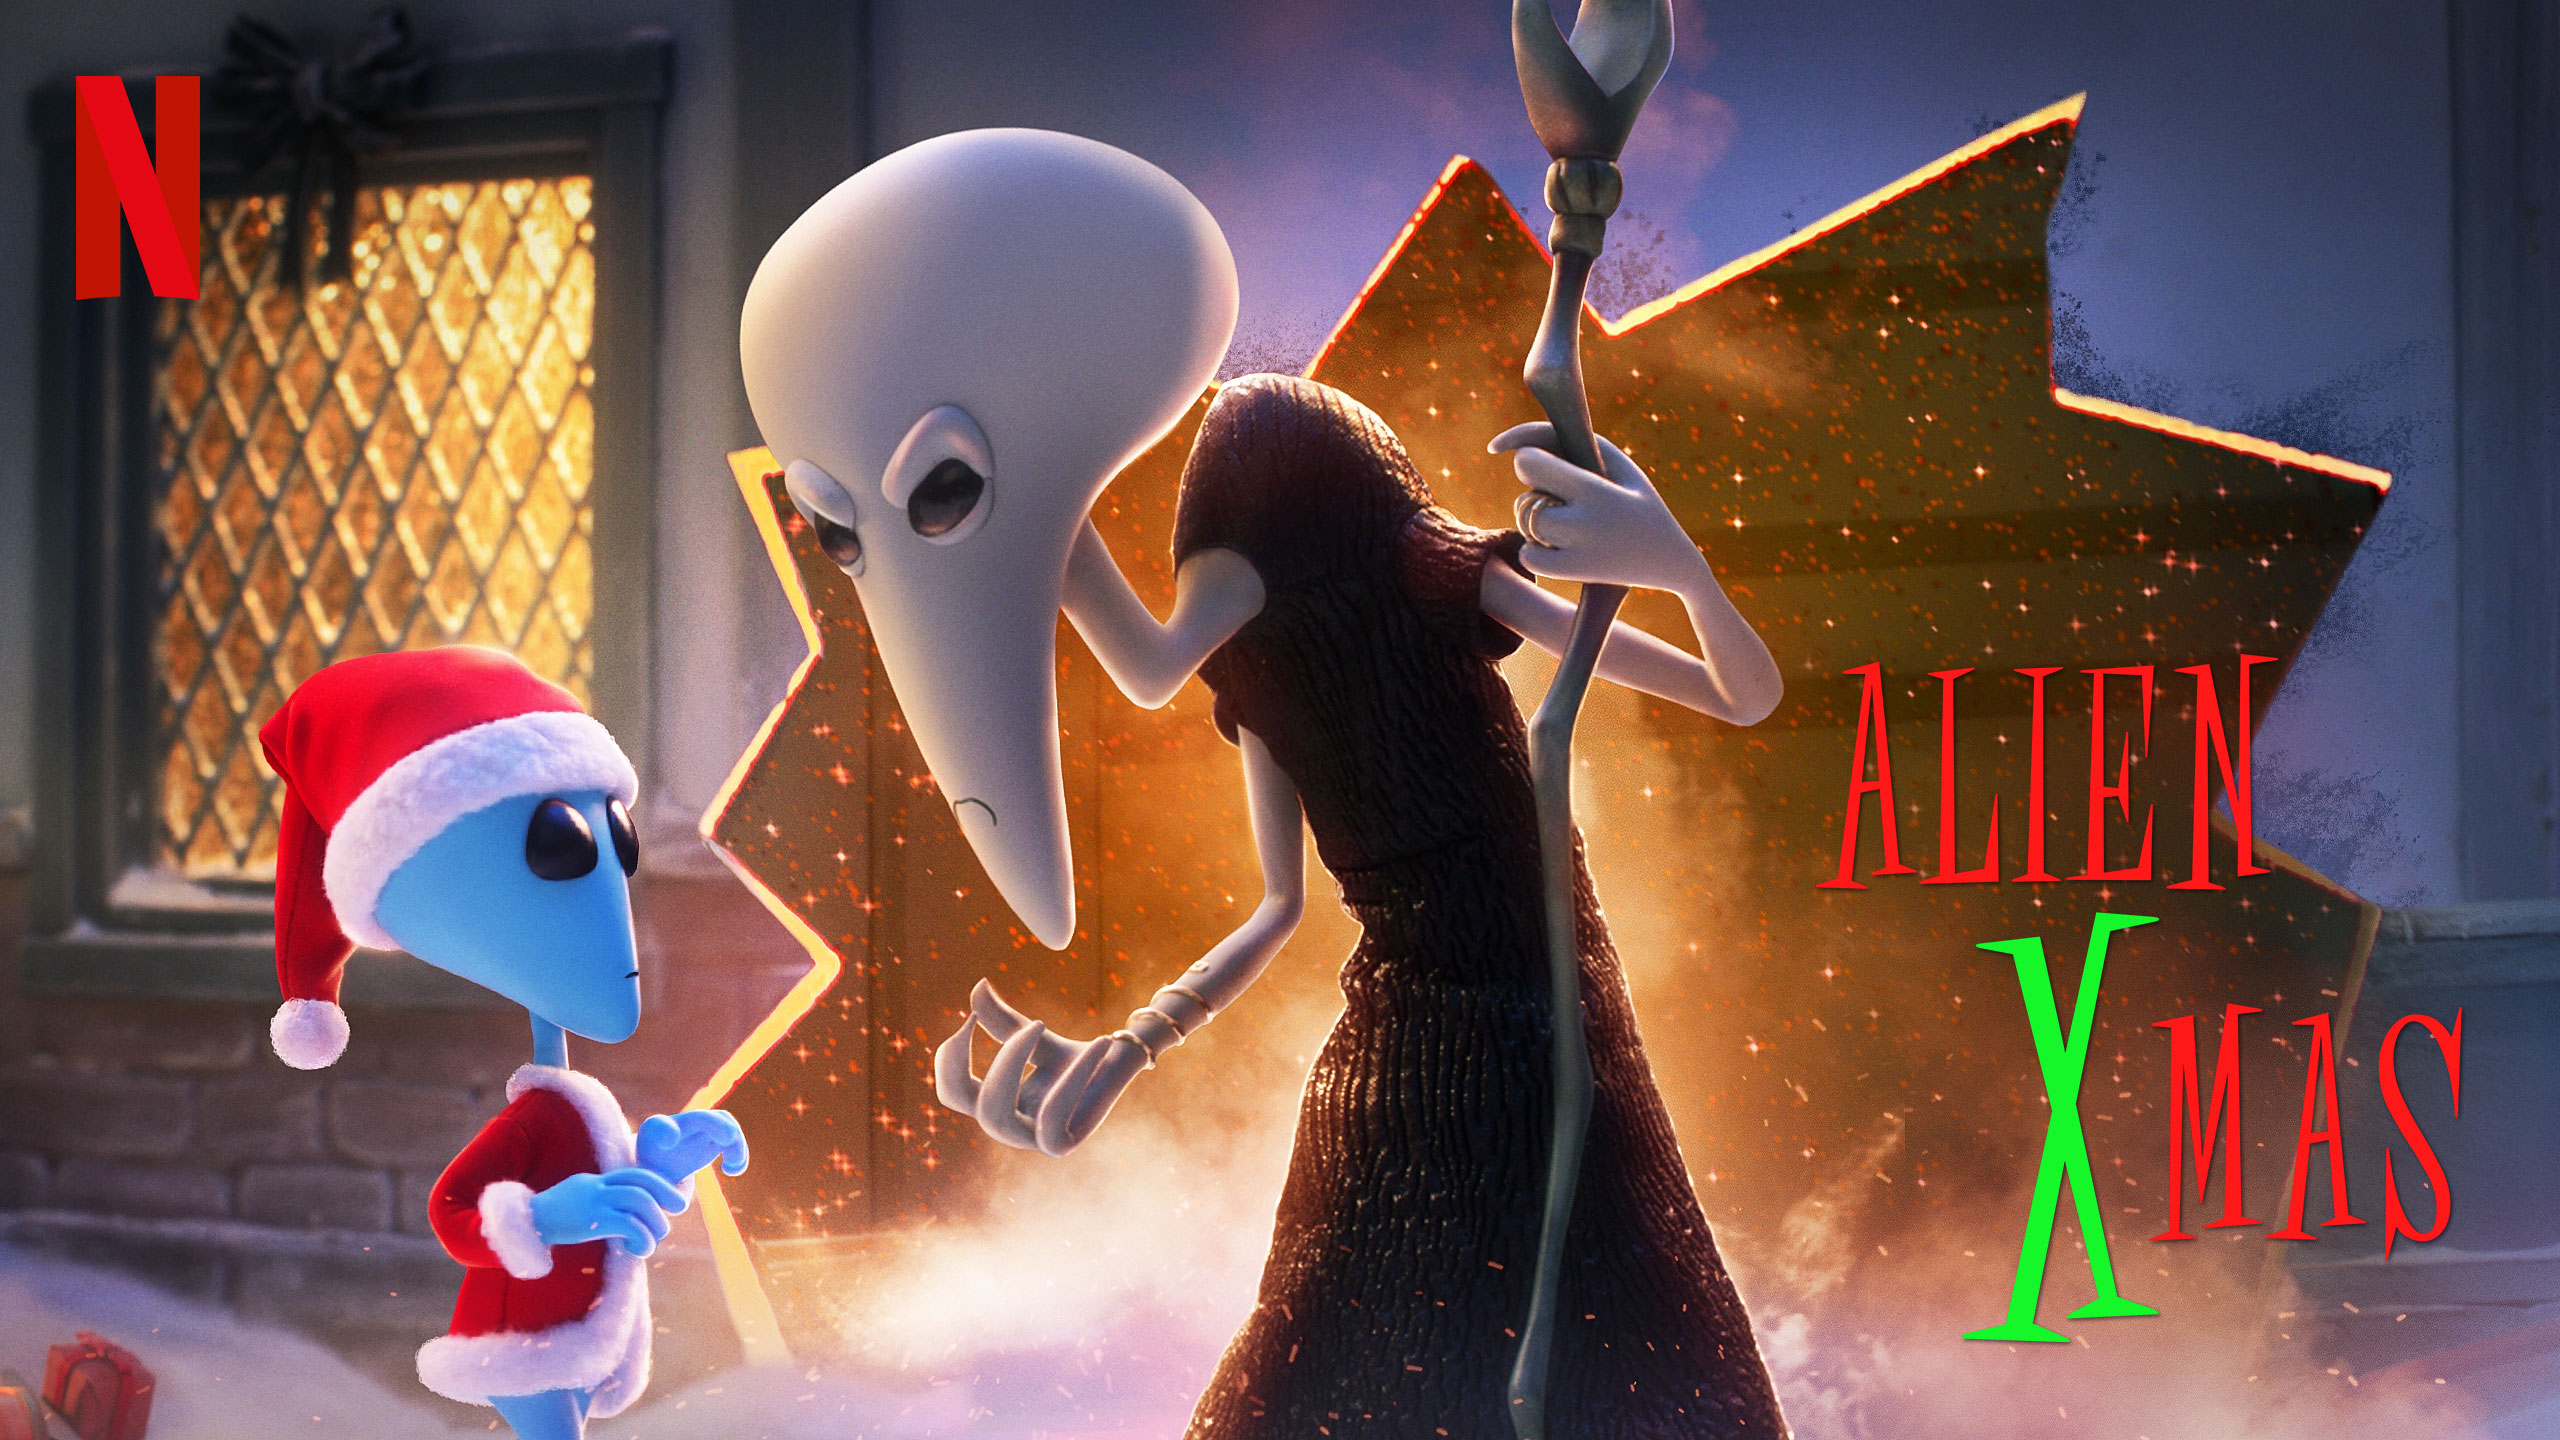 Alien XMas | Netflix DA Concept, Finishing & Illustration